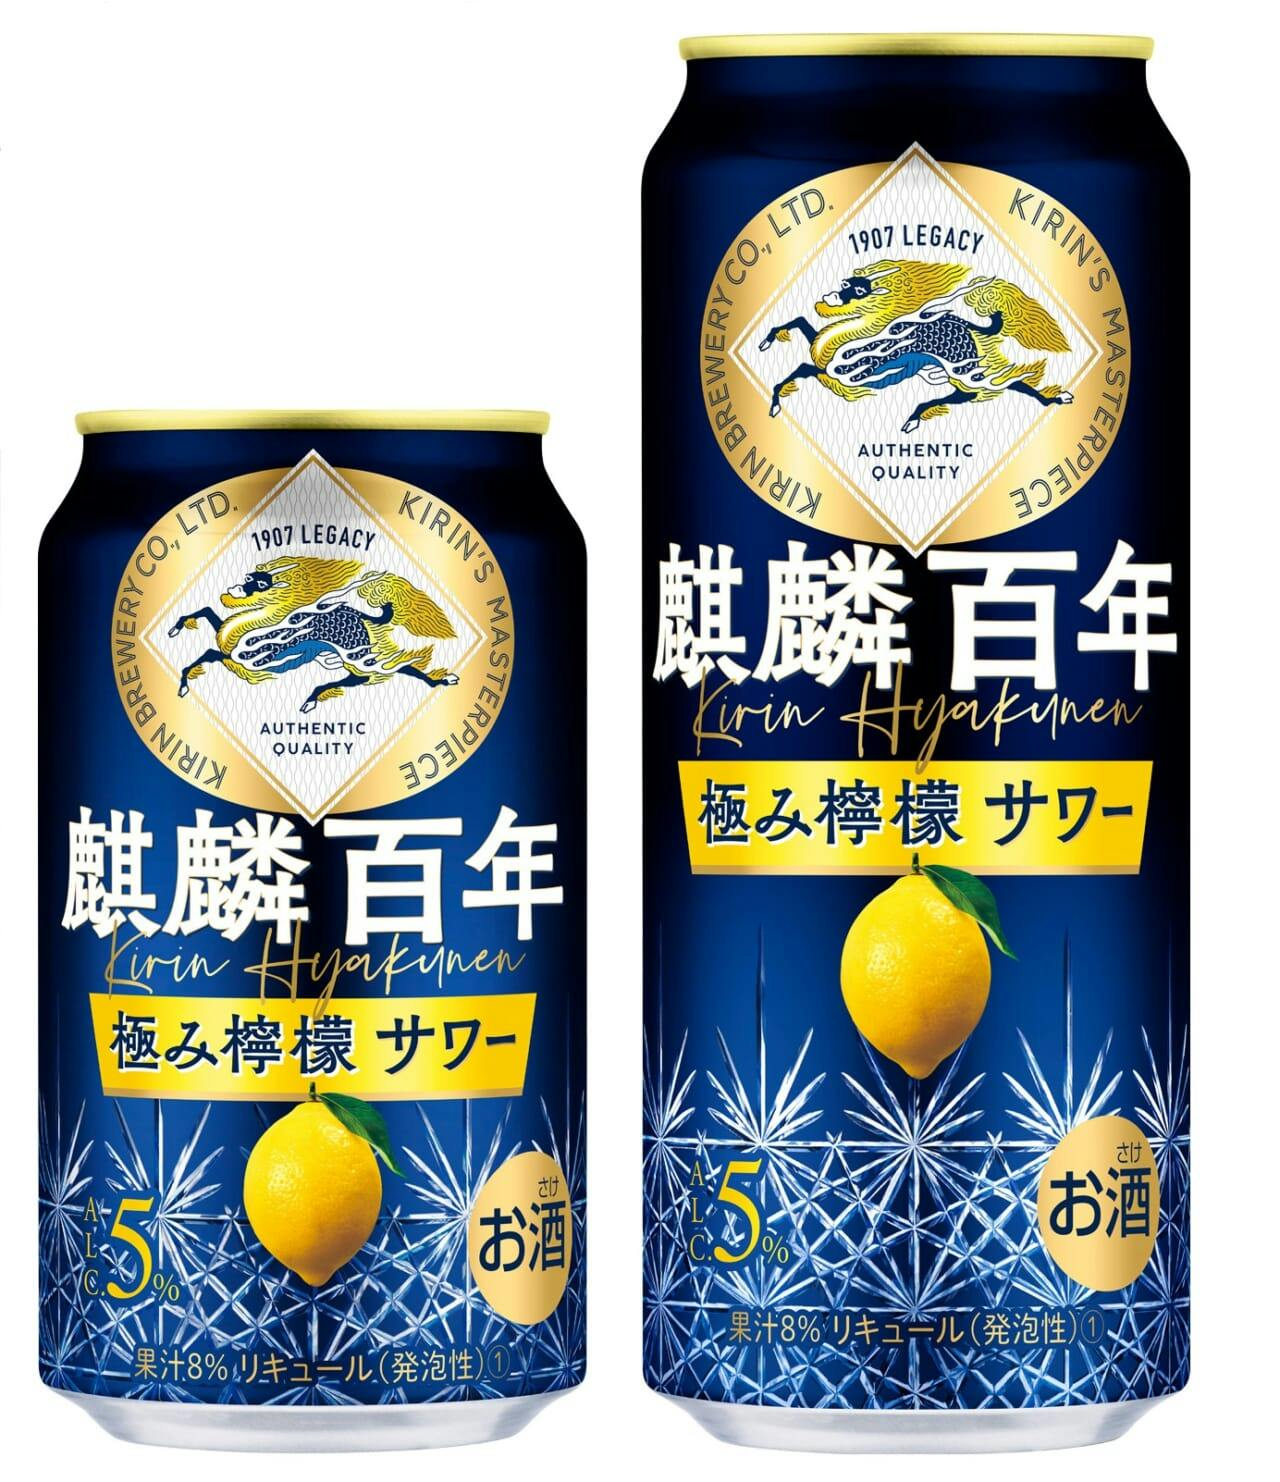 キリンビール「麒麟百年 極み檸檬サワー」